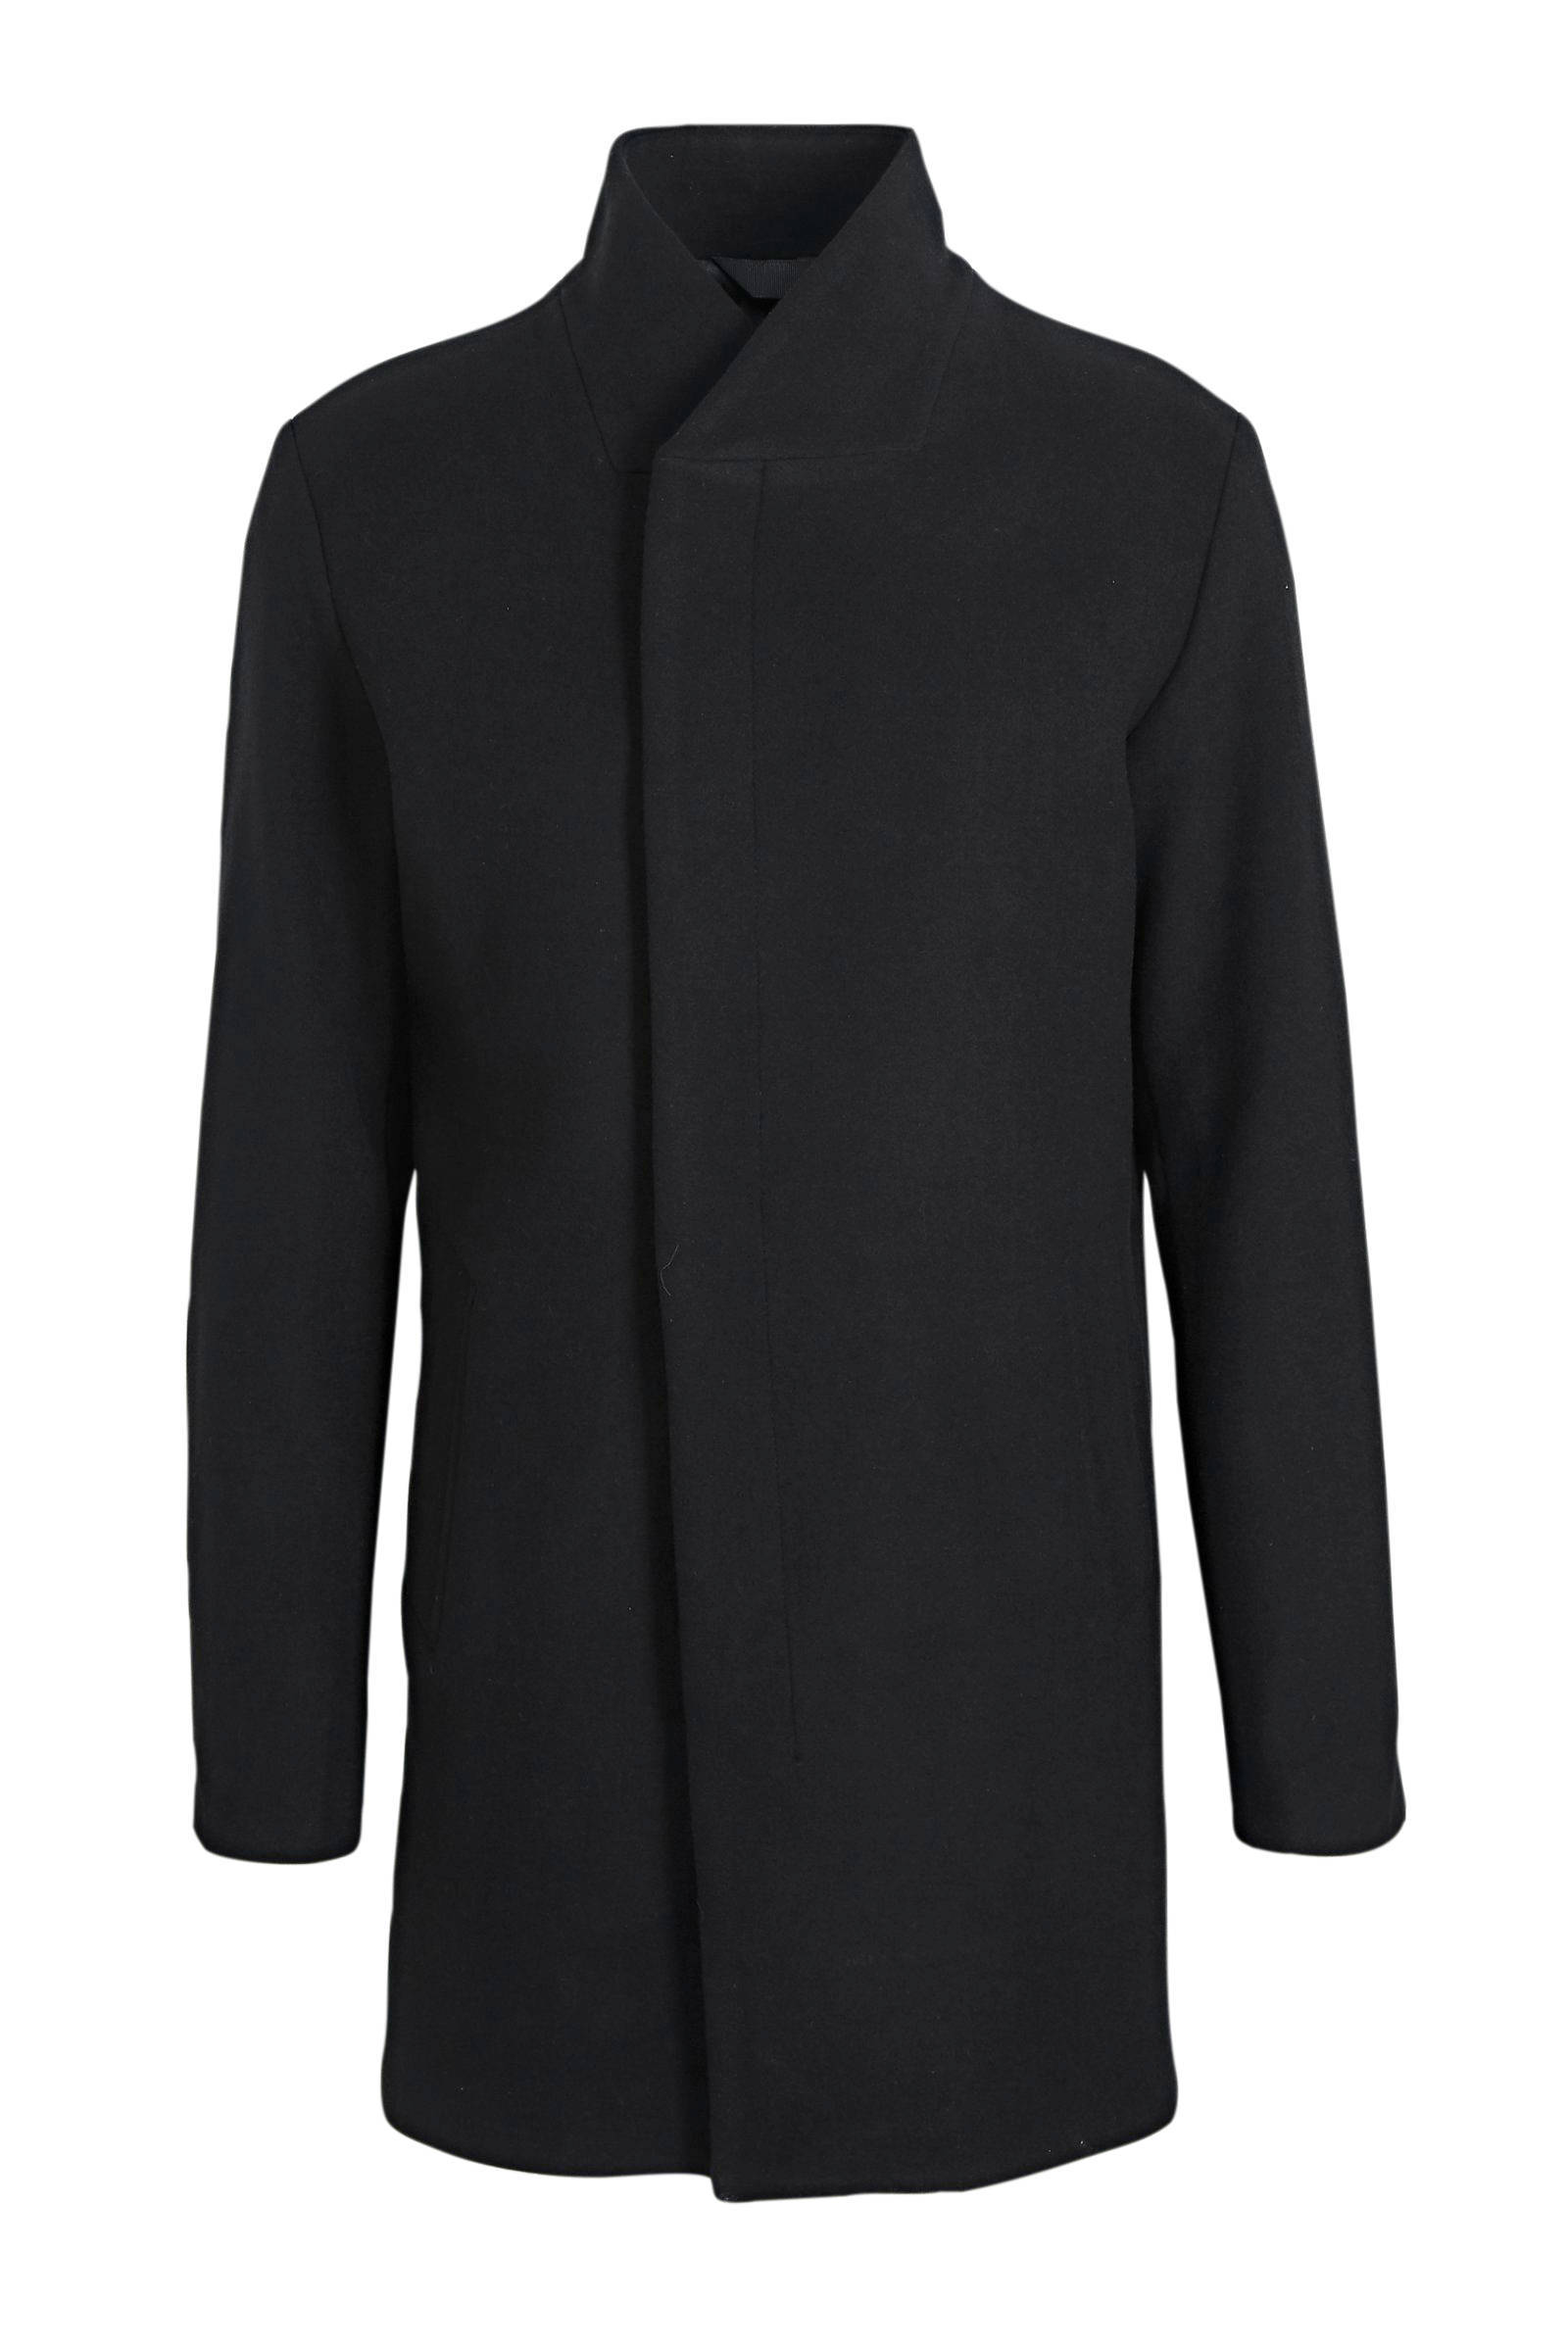 JACK & JONES ESSENTIALS Collum jas met wol zwart online kopen